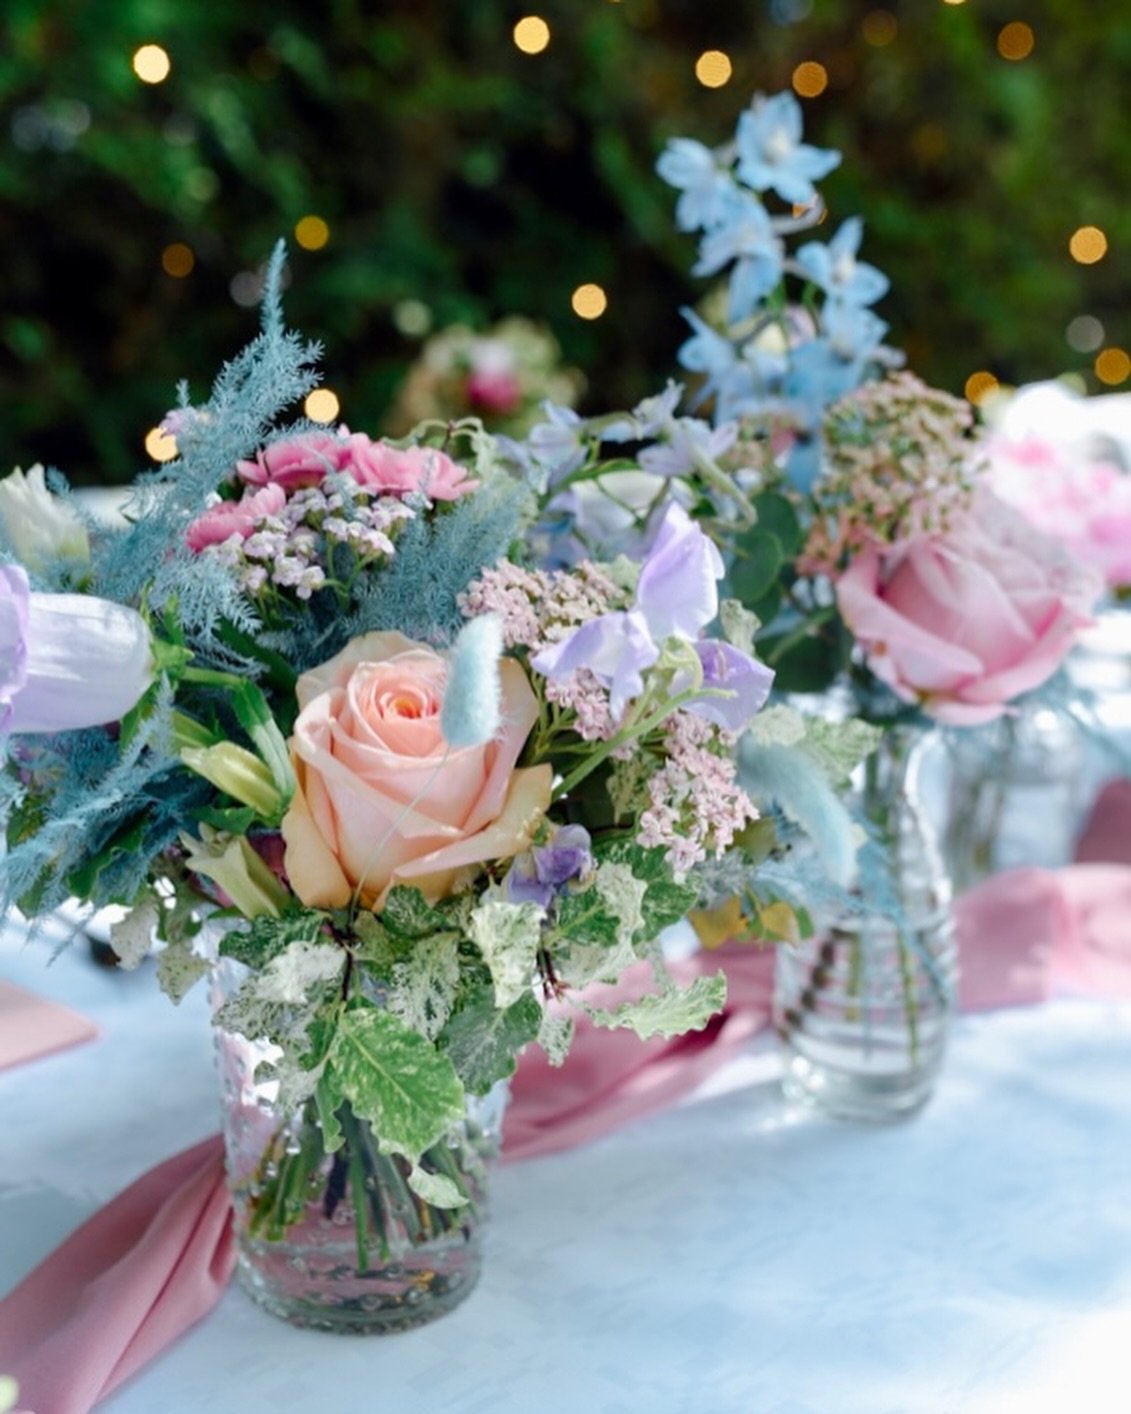 La table d&rsquo;honneur multicolore pastel 
de Camille &amp; Jordan qui &eacute;clate comme un arc-en-ciel avec des  nuances douces &amp; vibrantes 🍬🩵🌸 🦄 
📷 @studiopushpa 🍬
📍 @rivegauche_aime_laplagne 

.
.
.
#designerfloral #floraldesign #fl